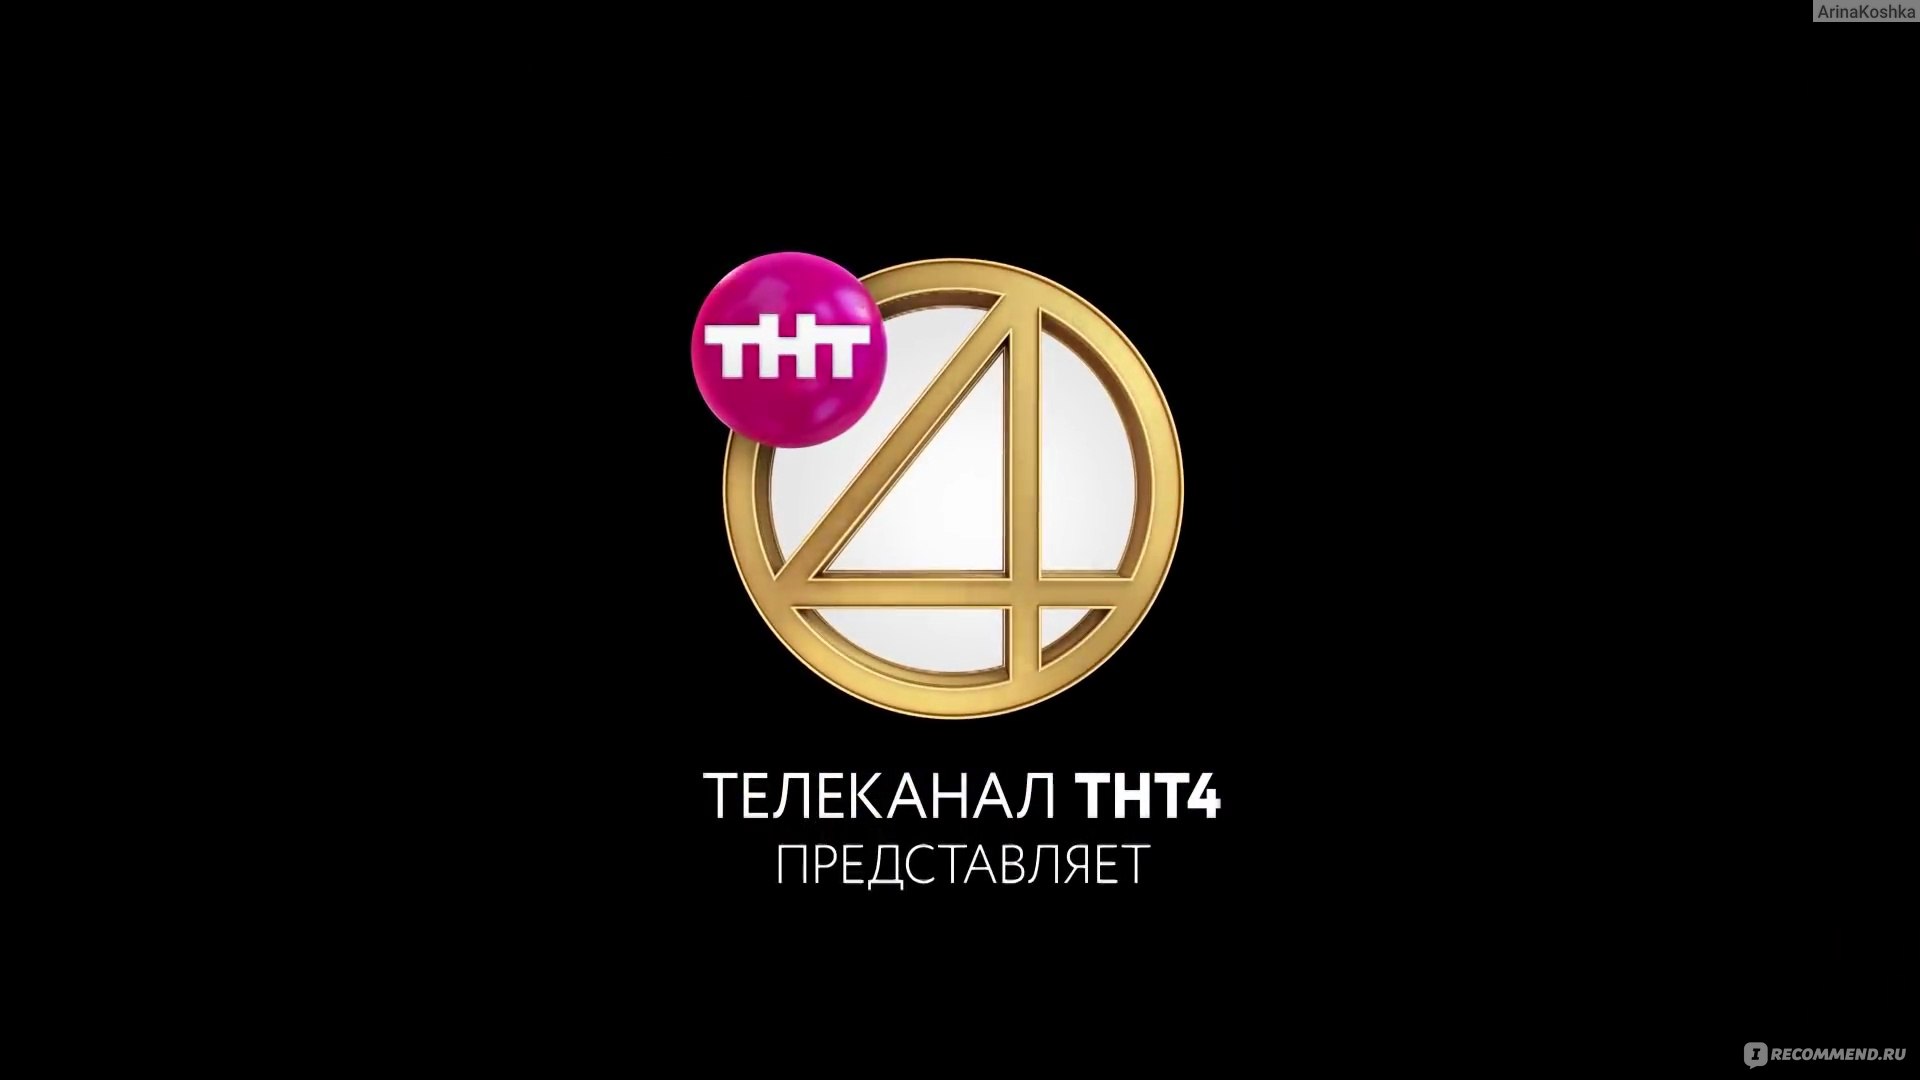 Рекламы 4 канала. ТНТ 4. Телеканал ТНТ. ТНТ 4 реклама. Логотип канала ТНТ.